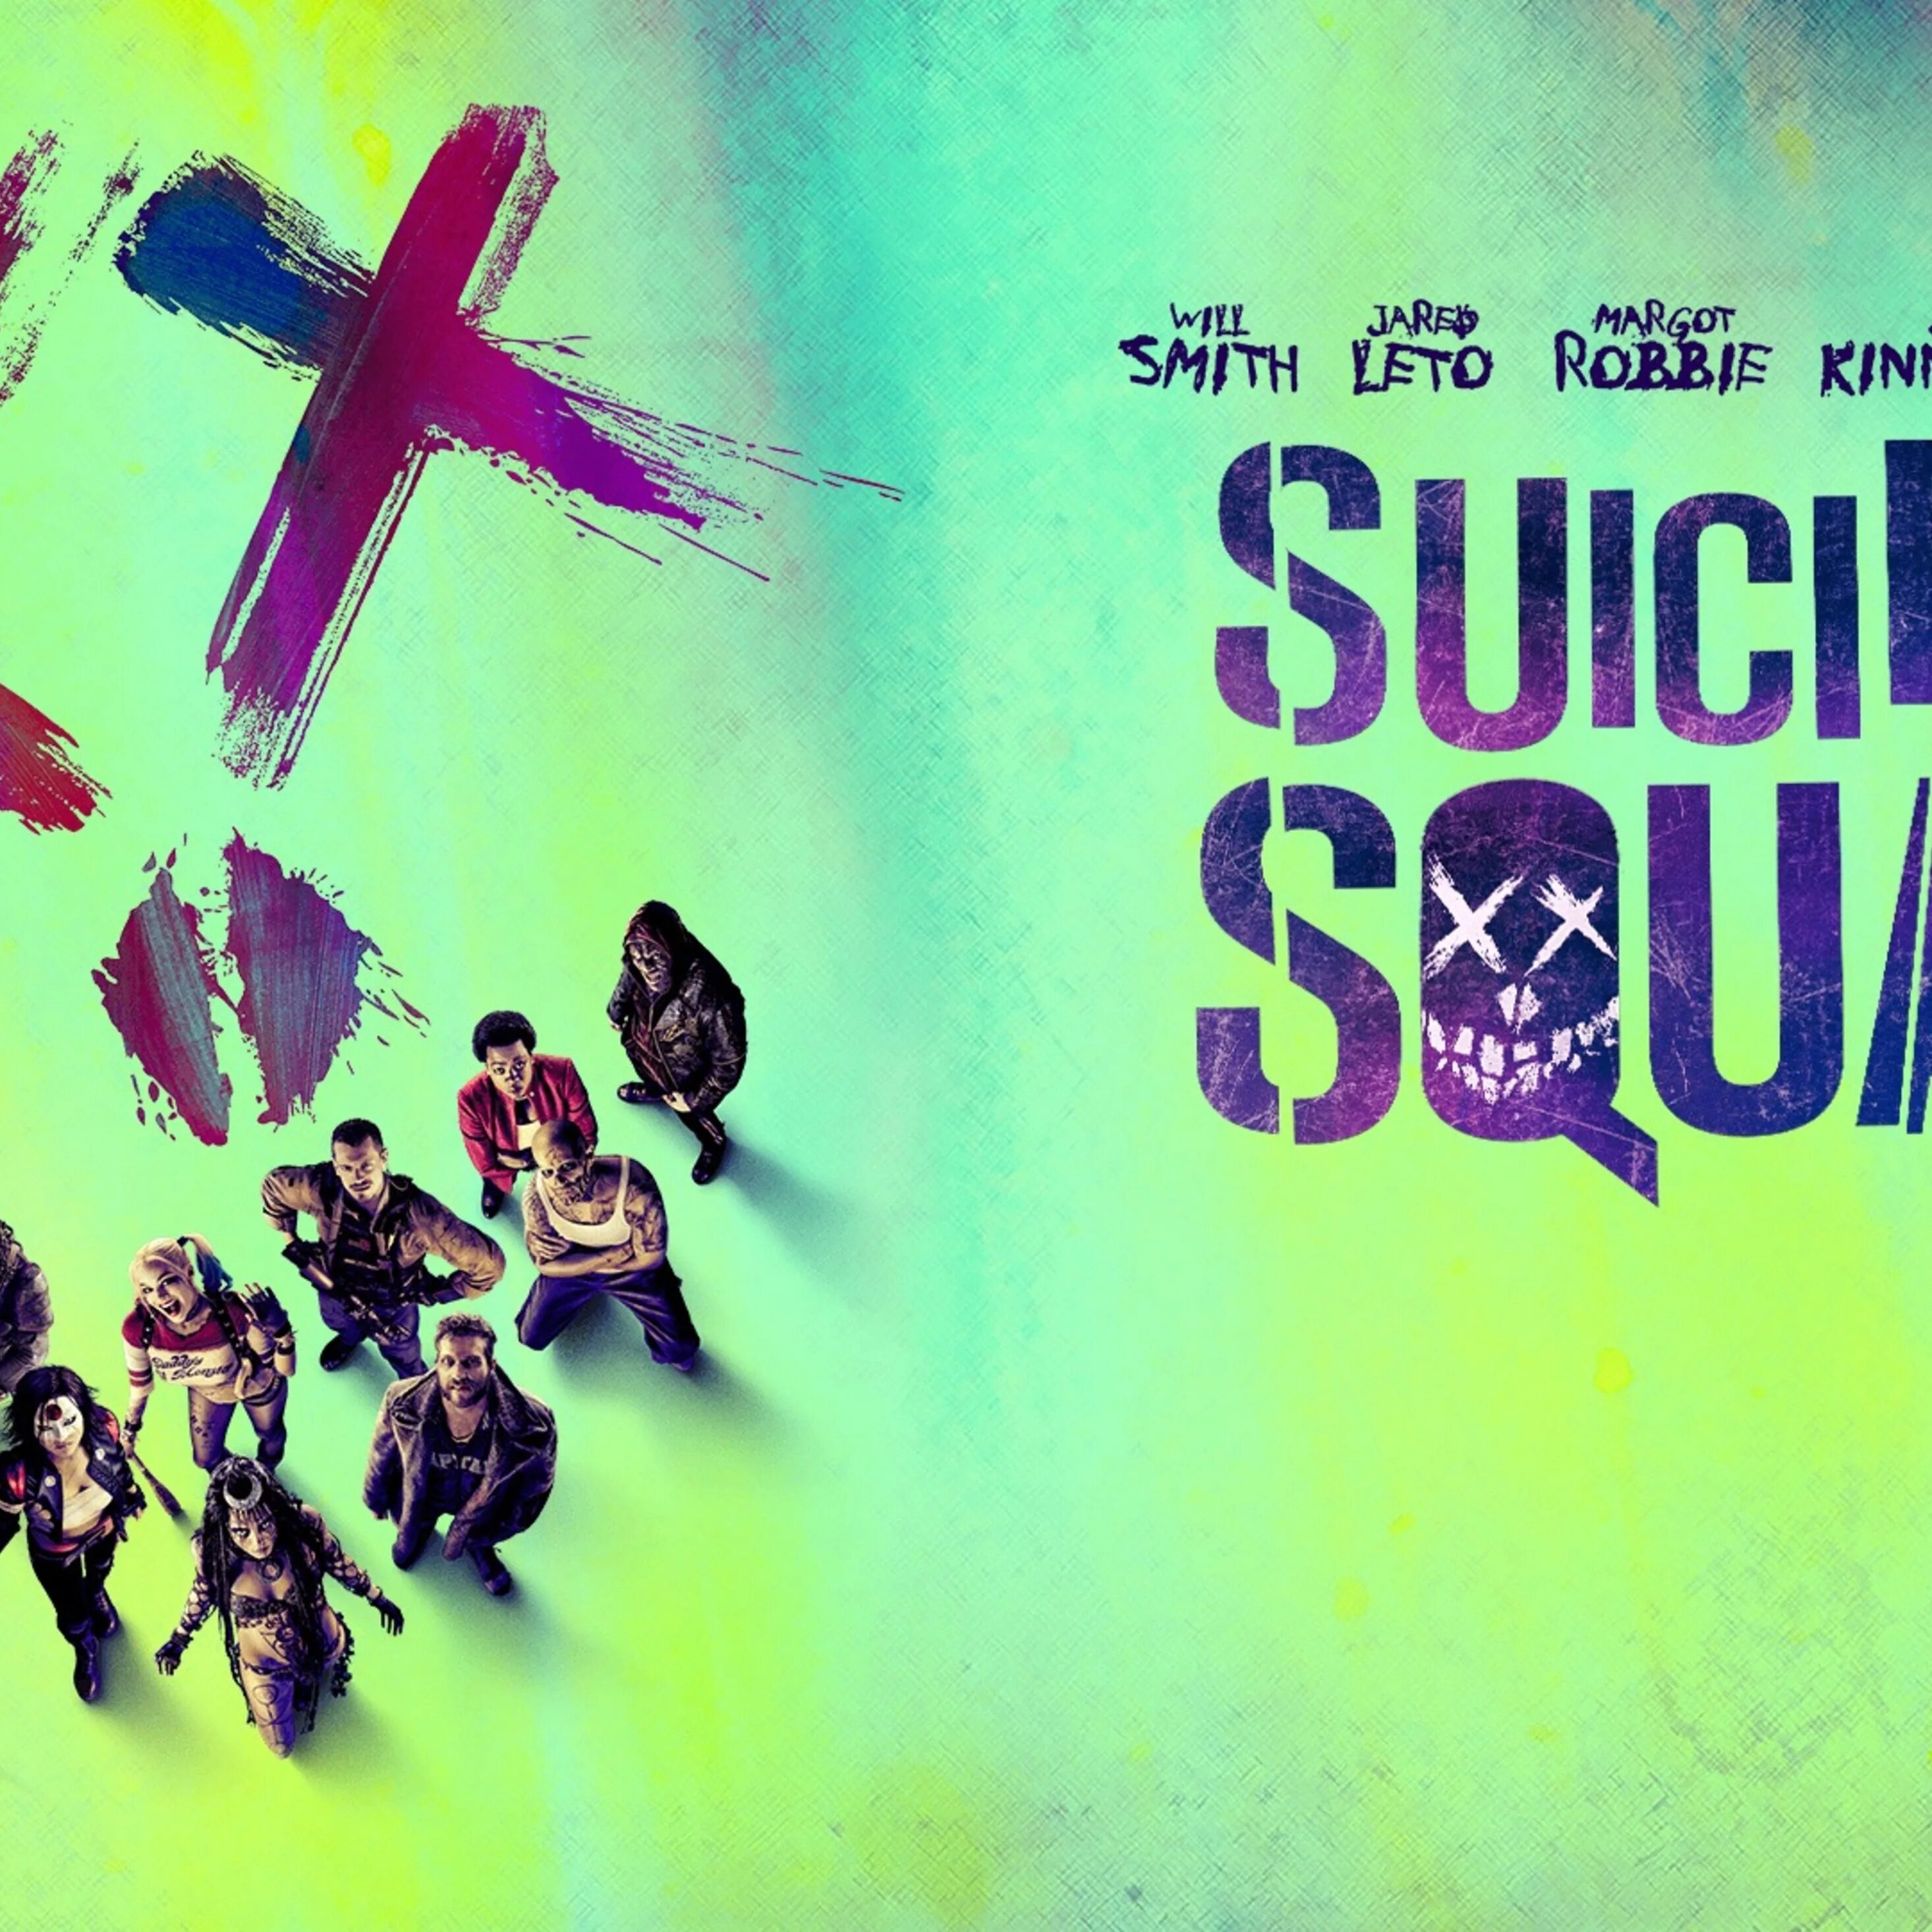 Gangsta from suicide squad. Gangsta Kehlani отряд самоубийц. Suicide Squad: Special ops. Suicide Squad: the album. Отряд самоубийц Постер фиолетовый пустой.